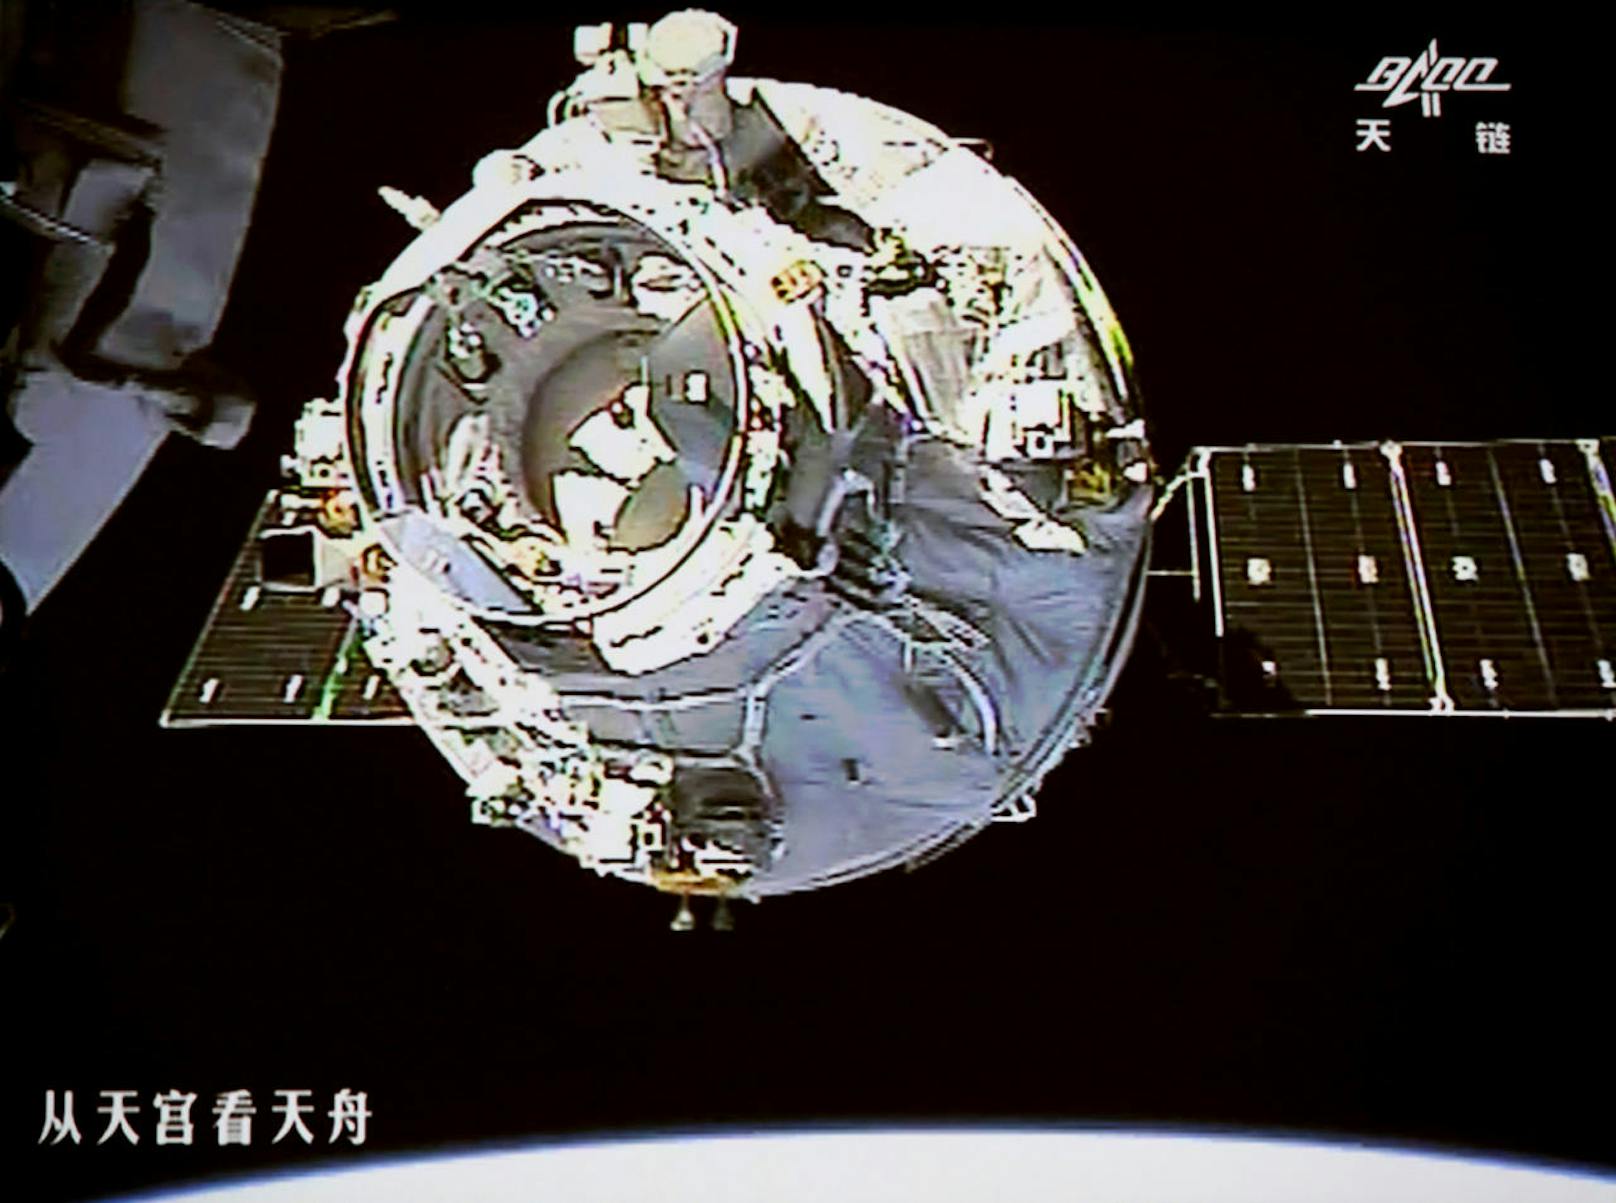 Am 22. April konnte das Versorgungsmodul Tianzhou-1 erfolgreich an das Tiangong-2 Weltraumlabor andocken.